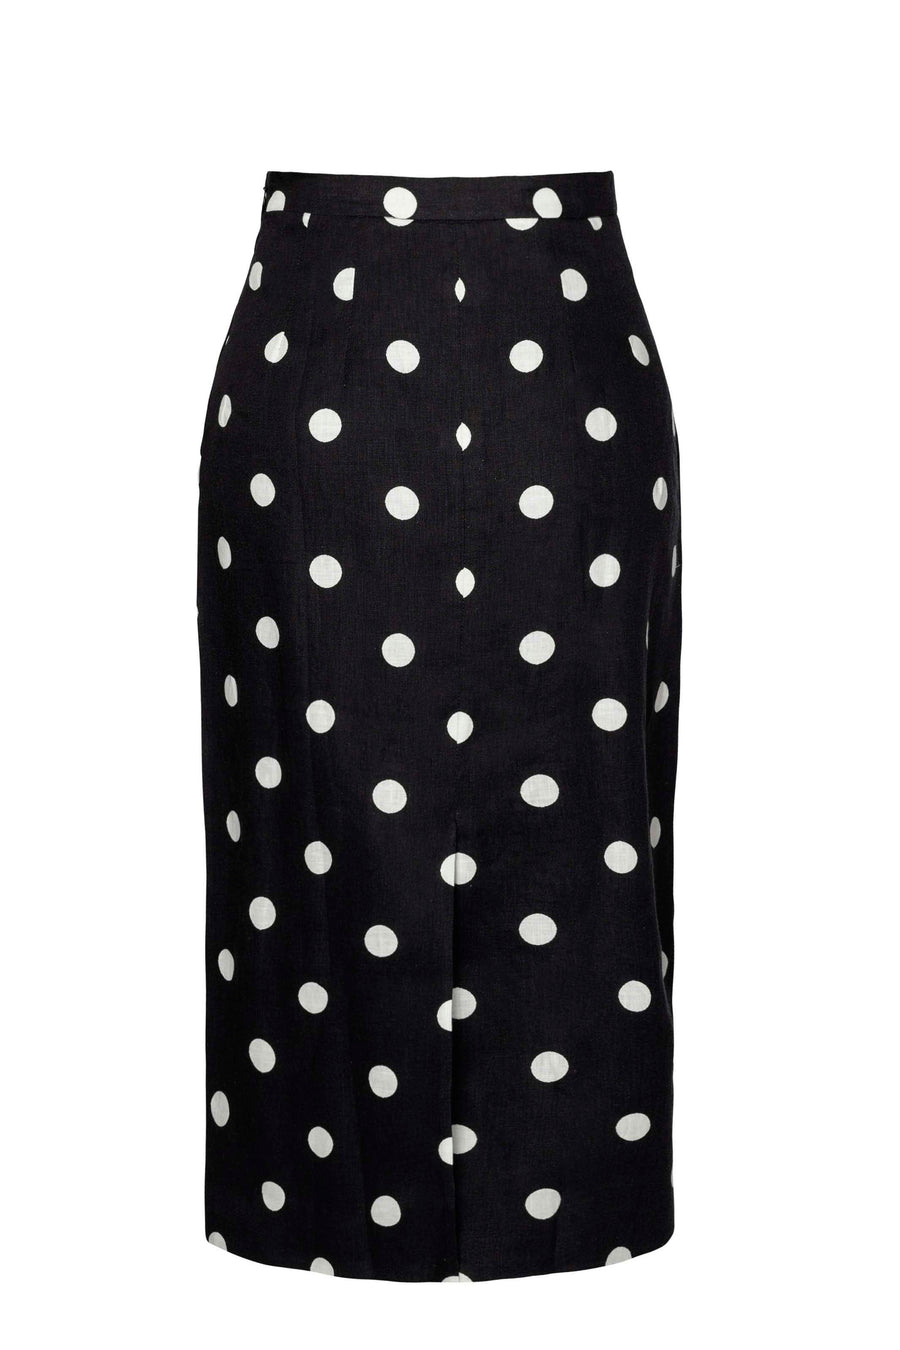 Mila Skirt Dots Black